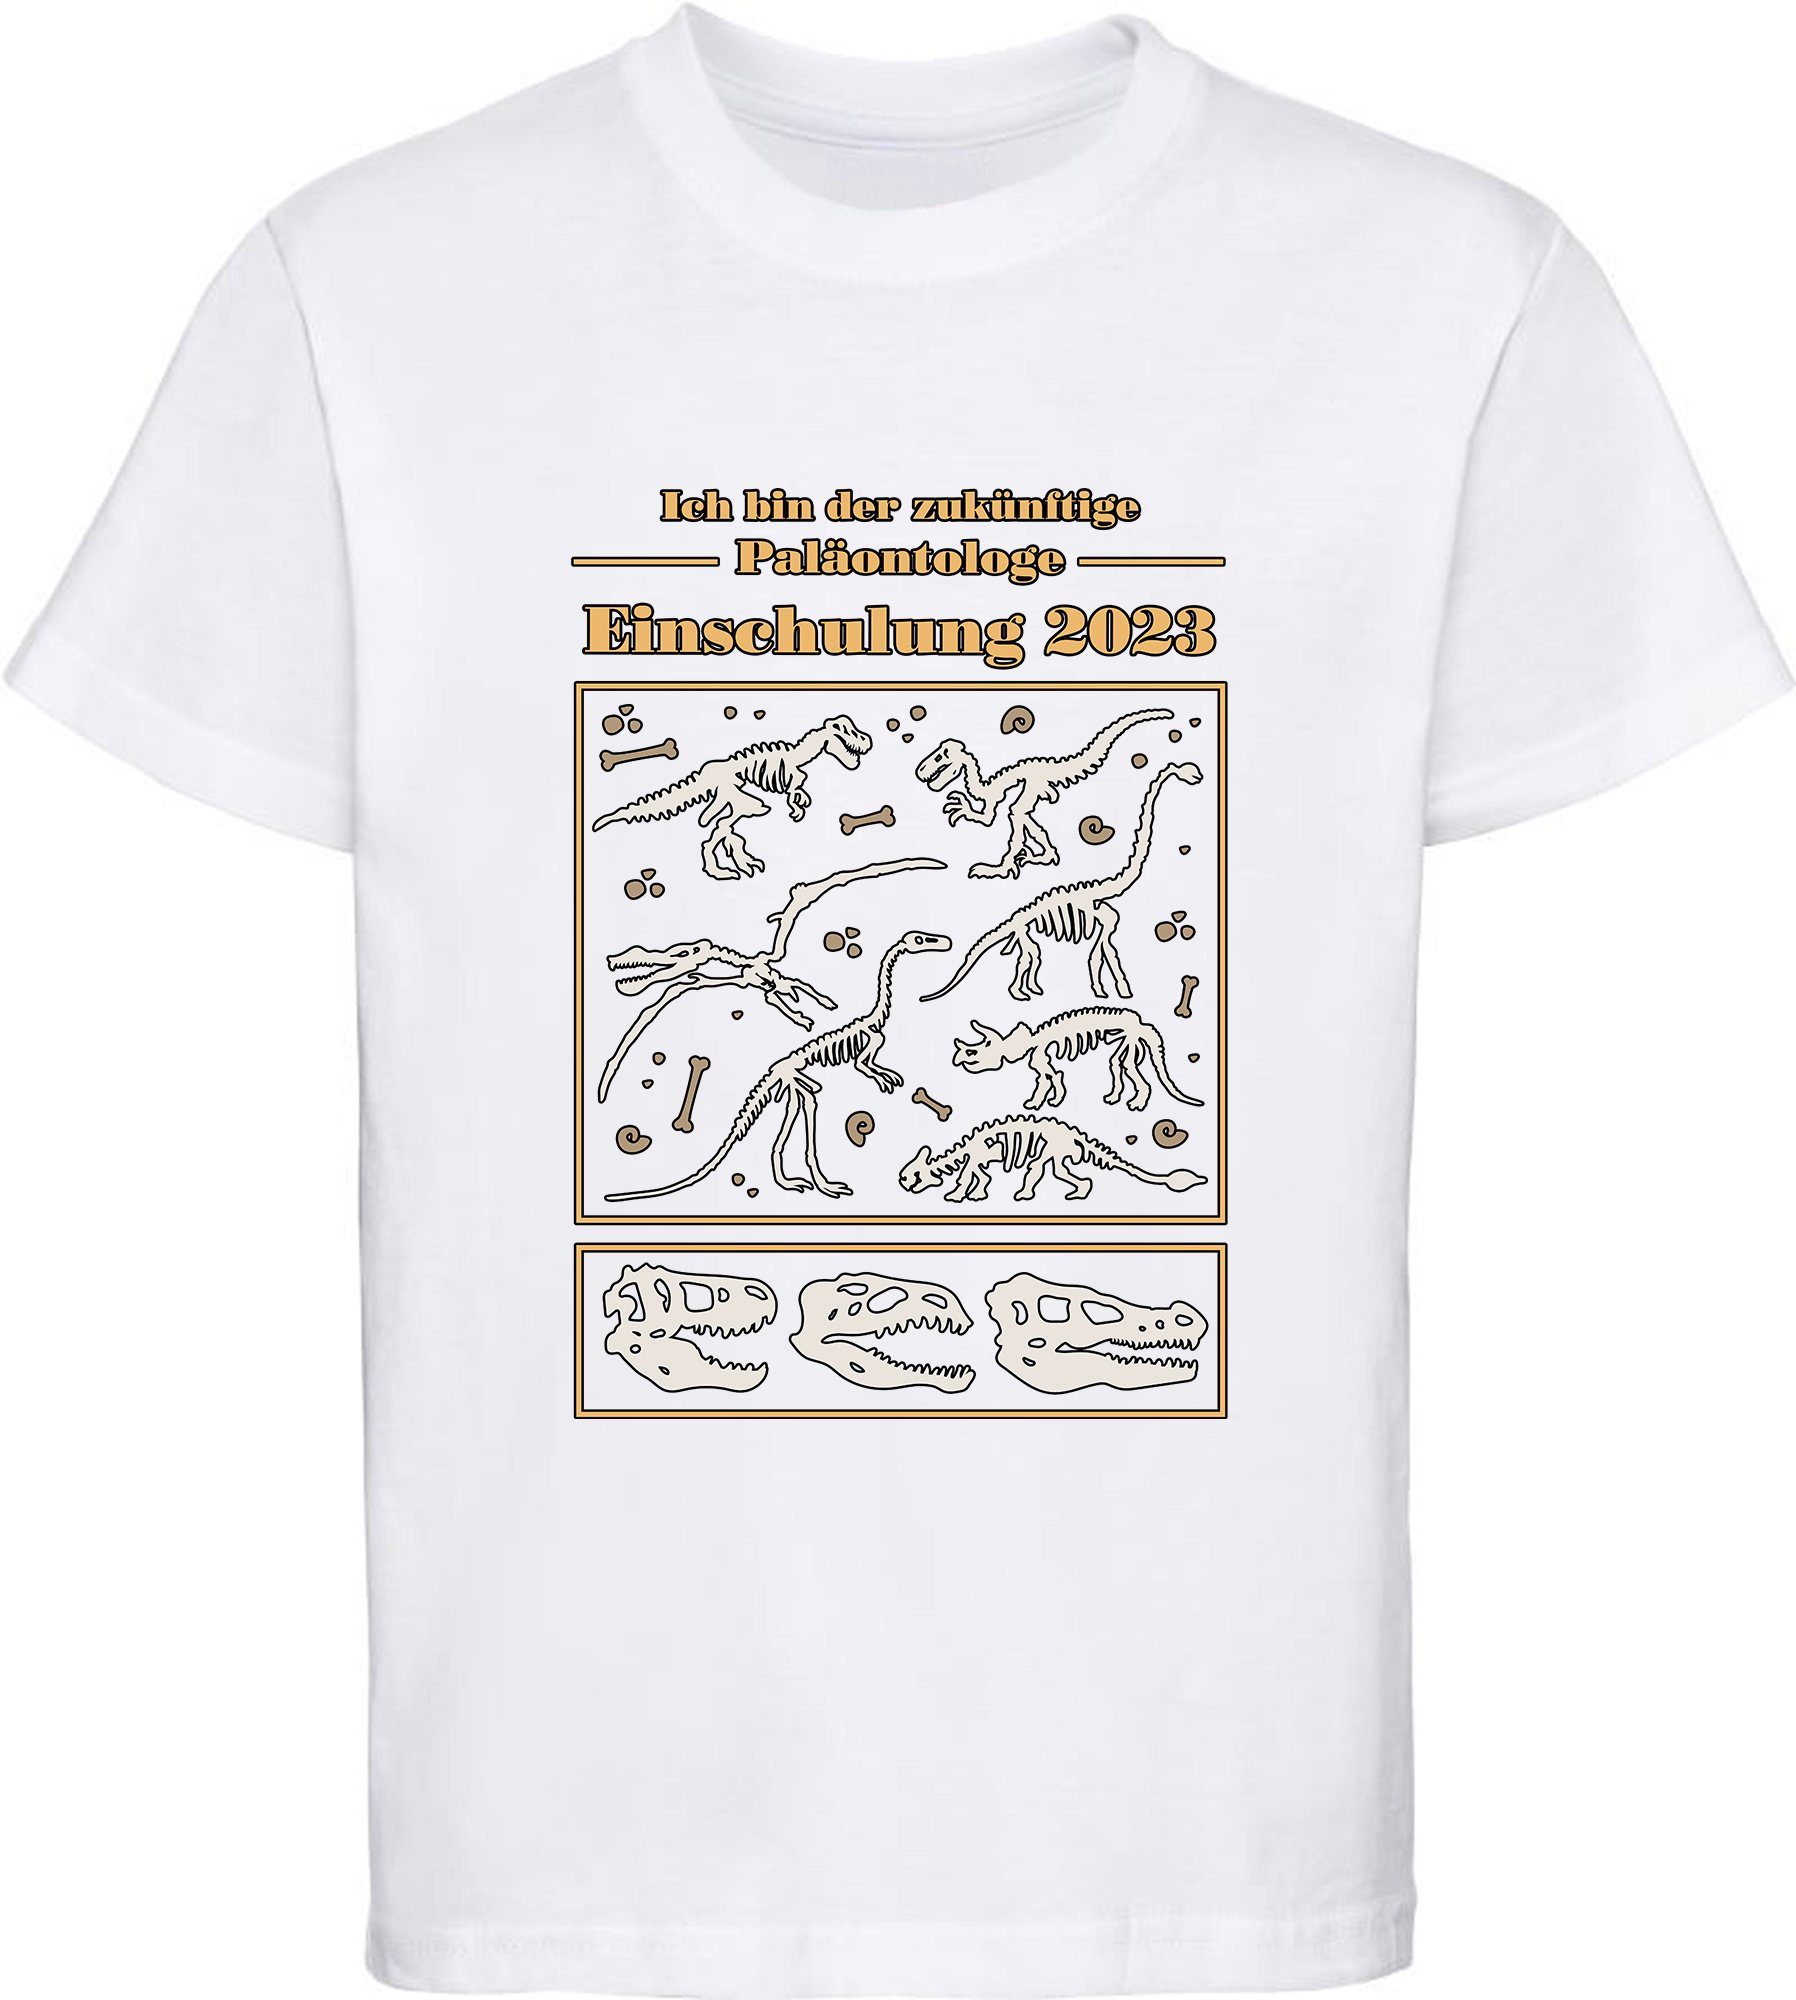 schwarz, 2023, Kinder Dino Baumwollshirt MyDesign24 zukünftige Paläontologe bedrucktes rot, i36 blau, T-Shirt Einschulung Skeletten Print-Shirt weiß, mit